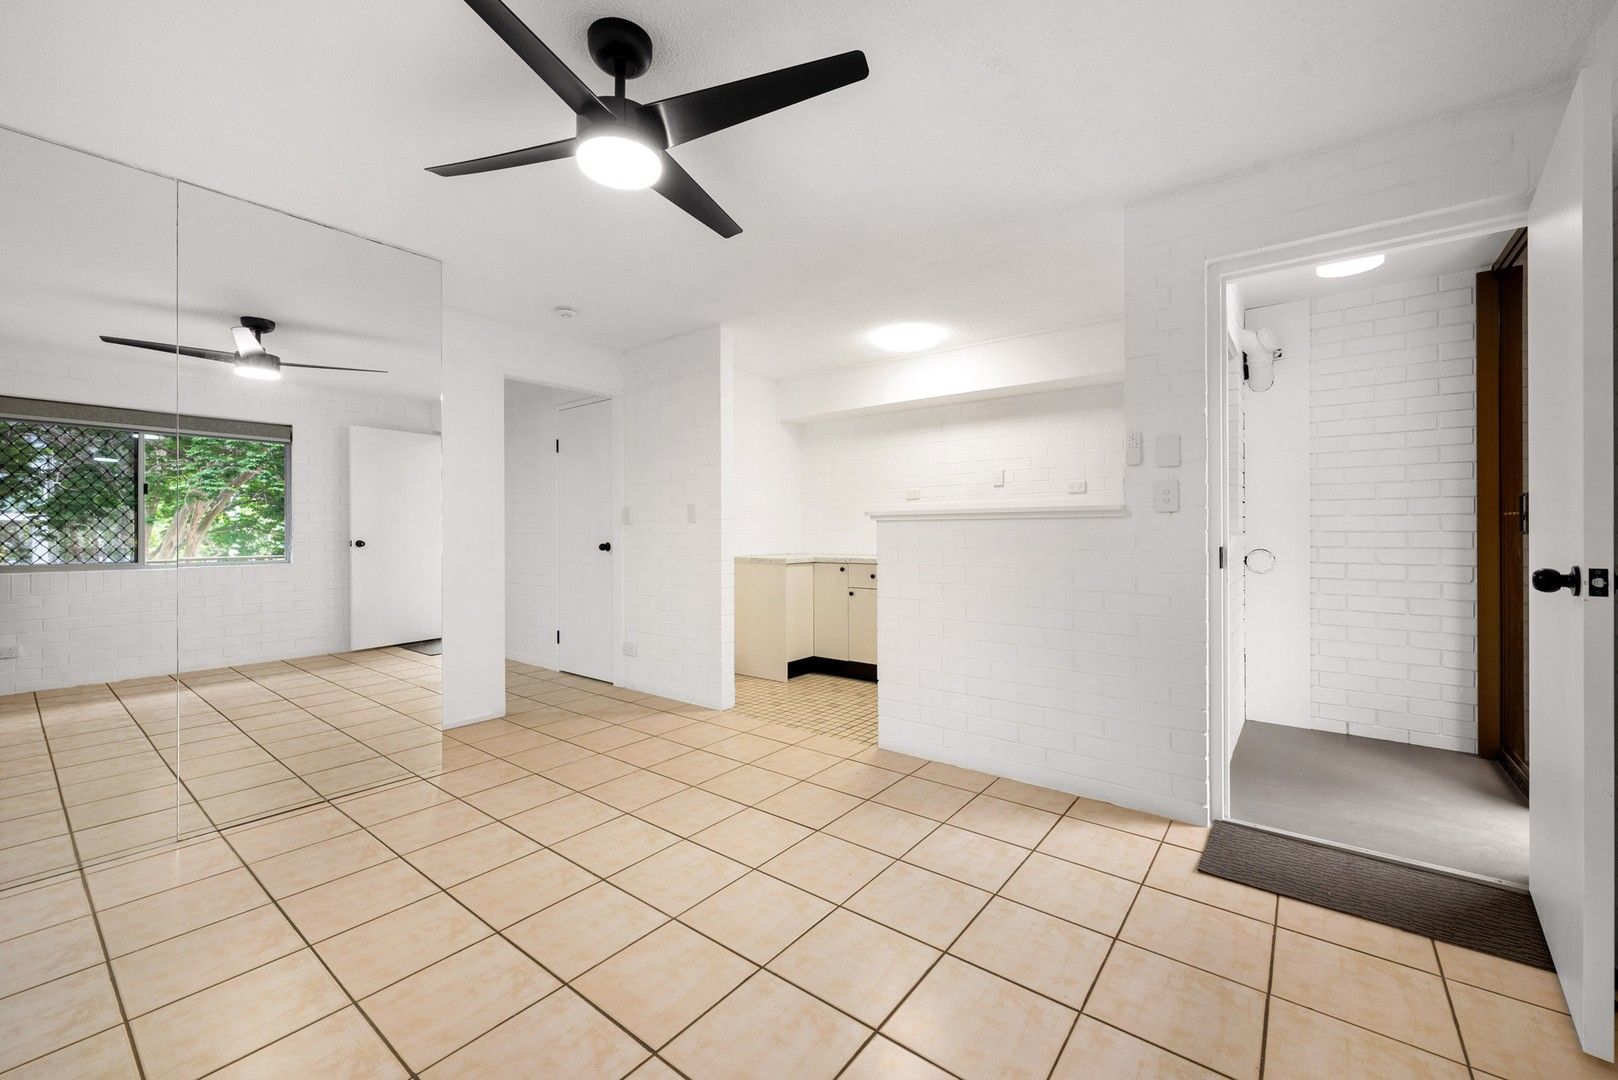 1 bedrooms Apartment / Unit / Flat in 4/31 Browne Street NEW FARM QLD, 4005